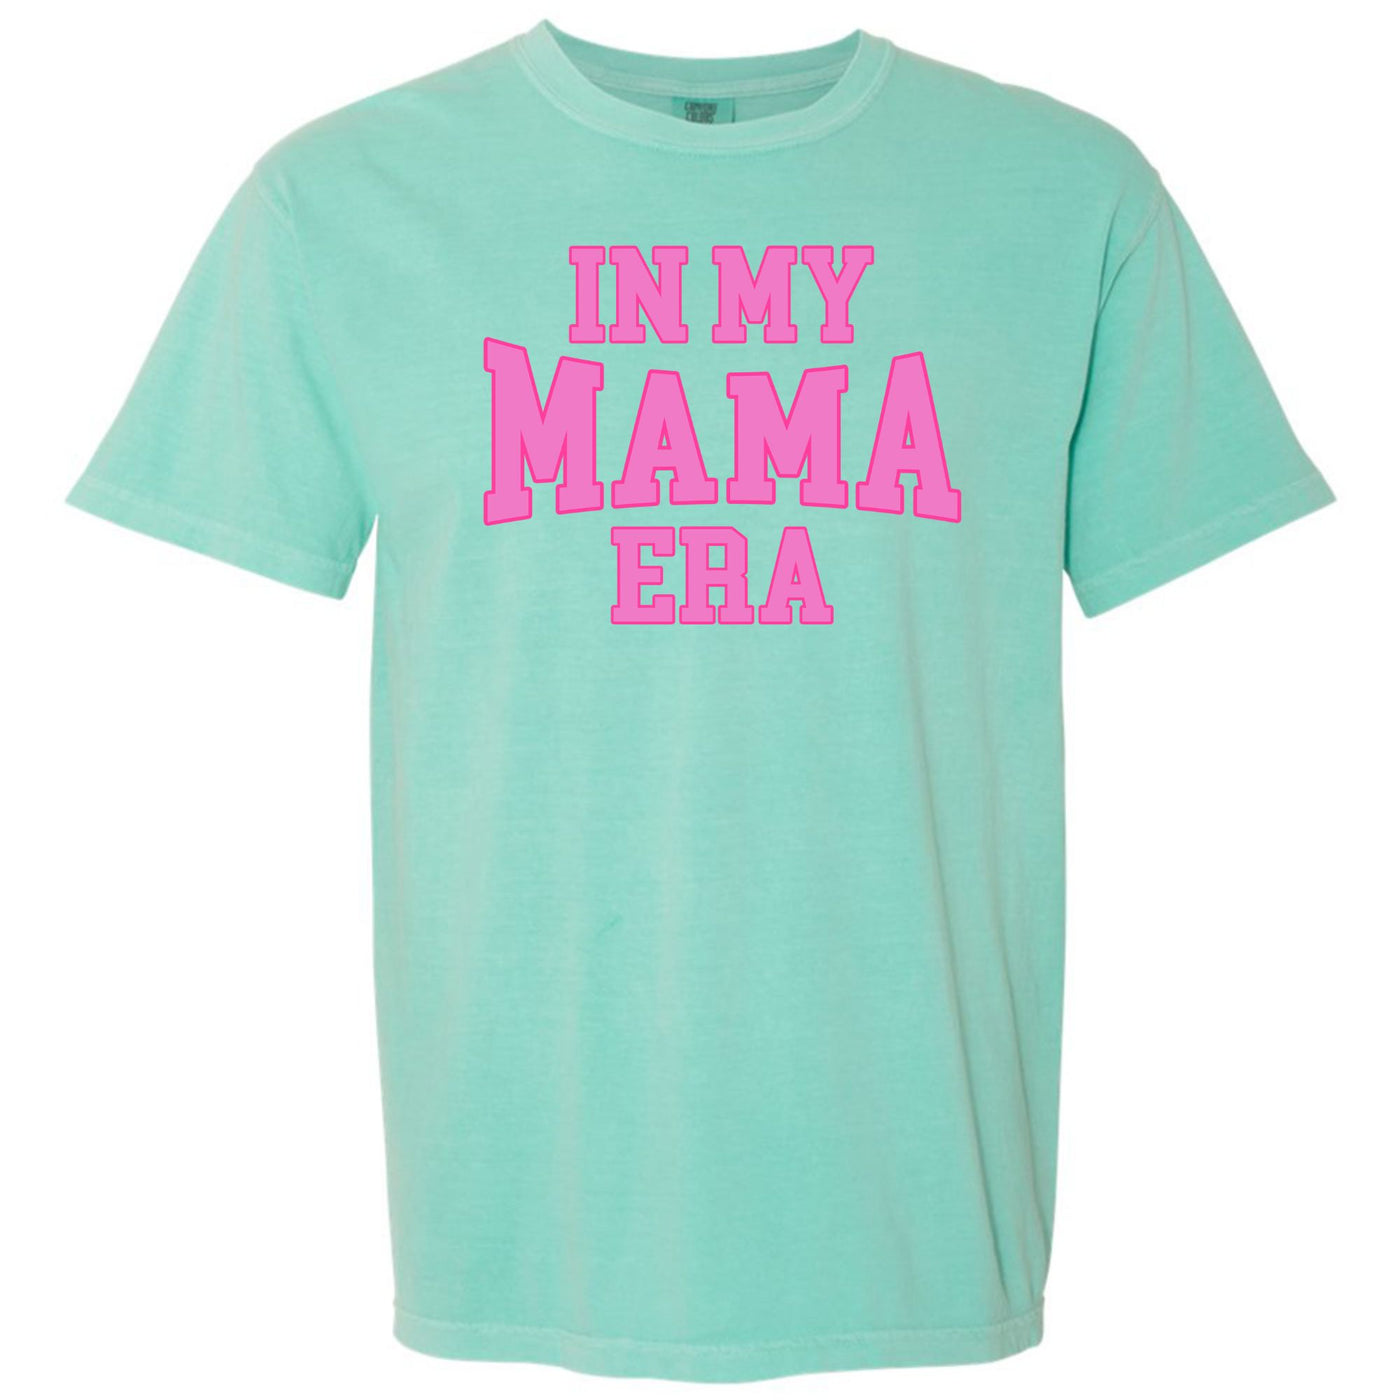 'In My Mama Era' T-Shirt